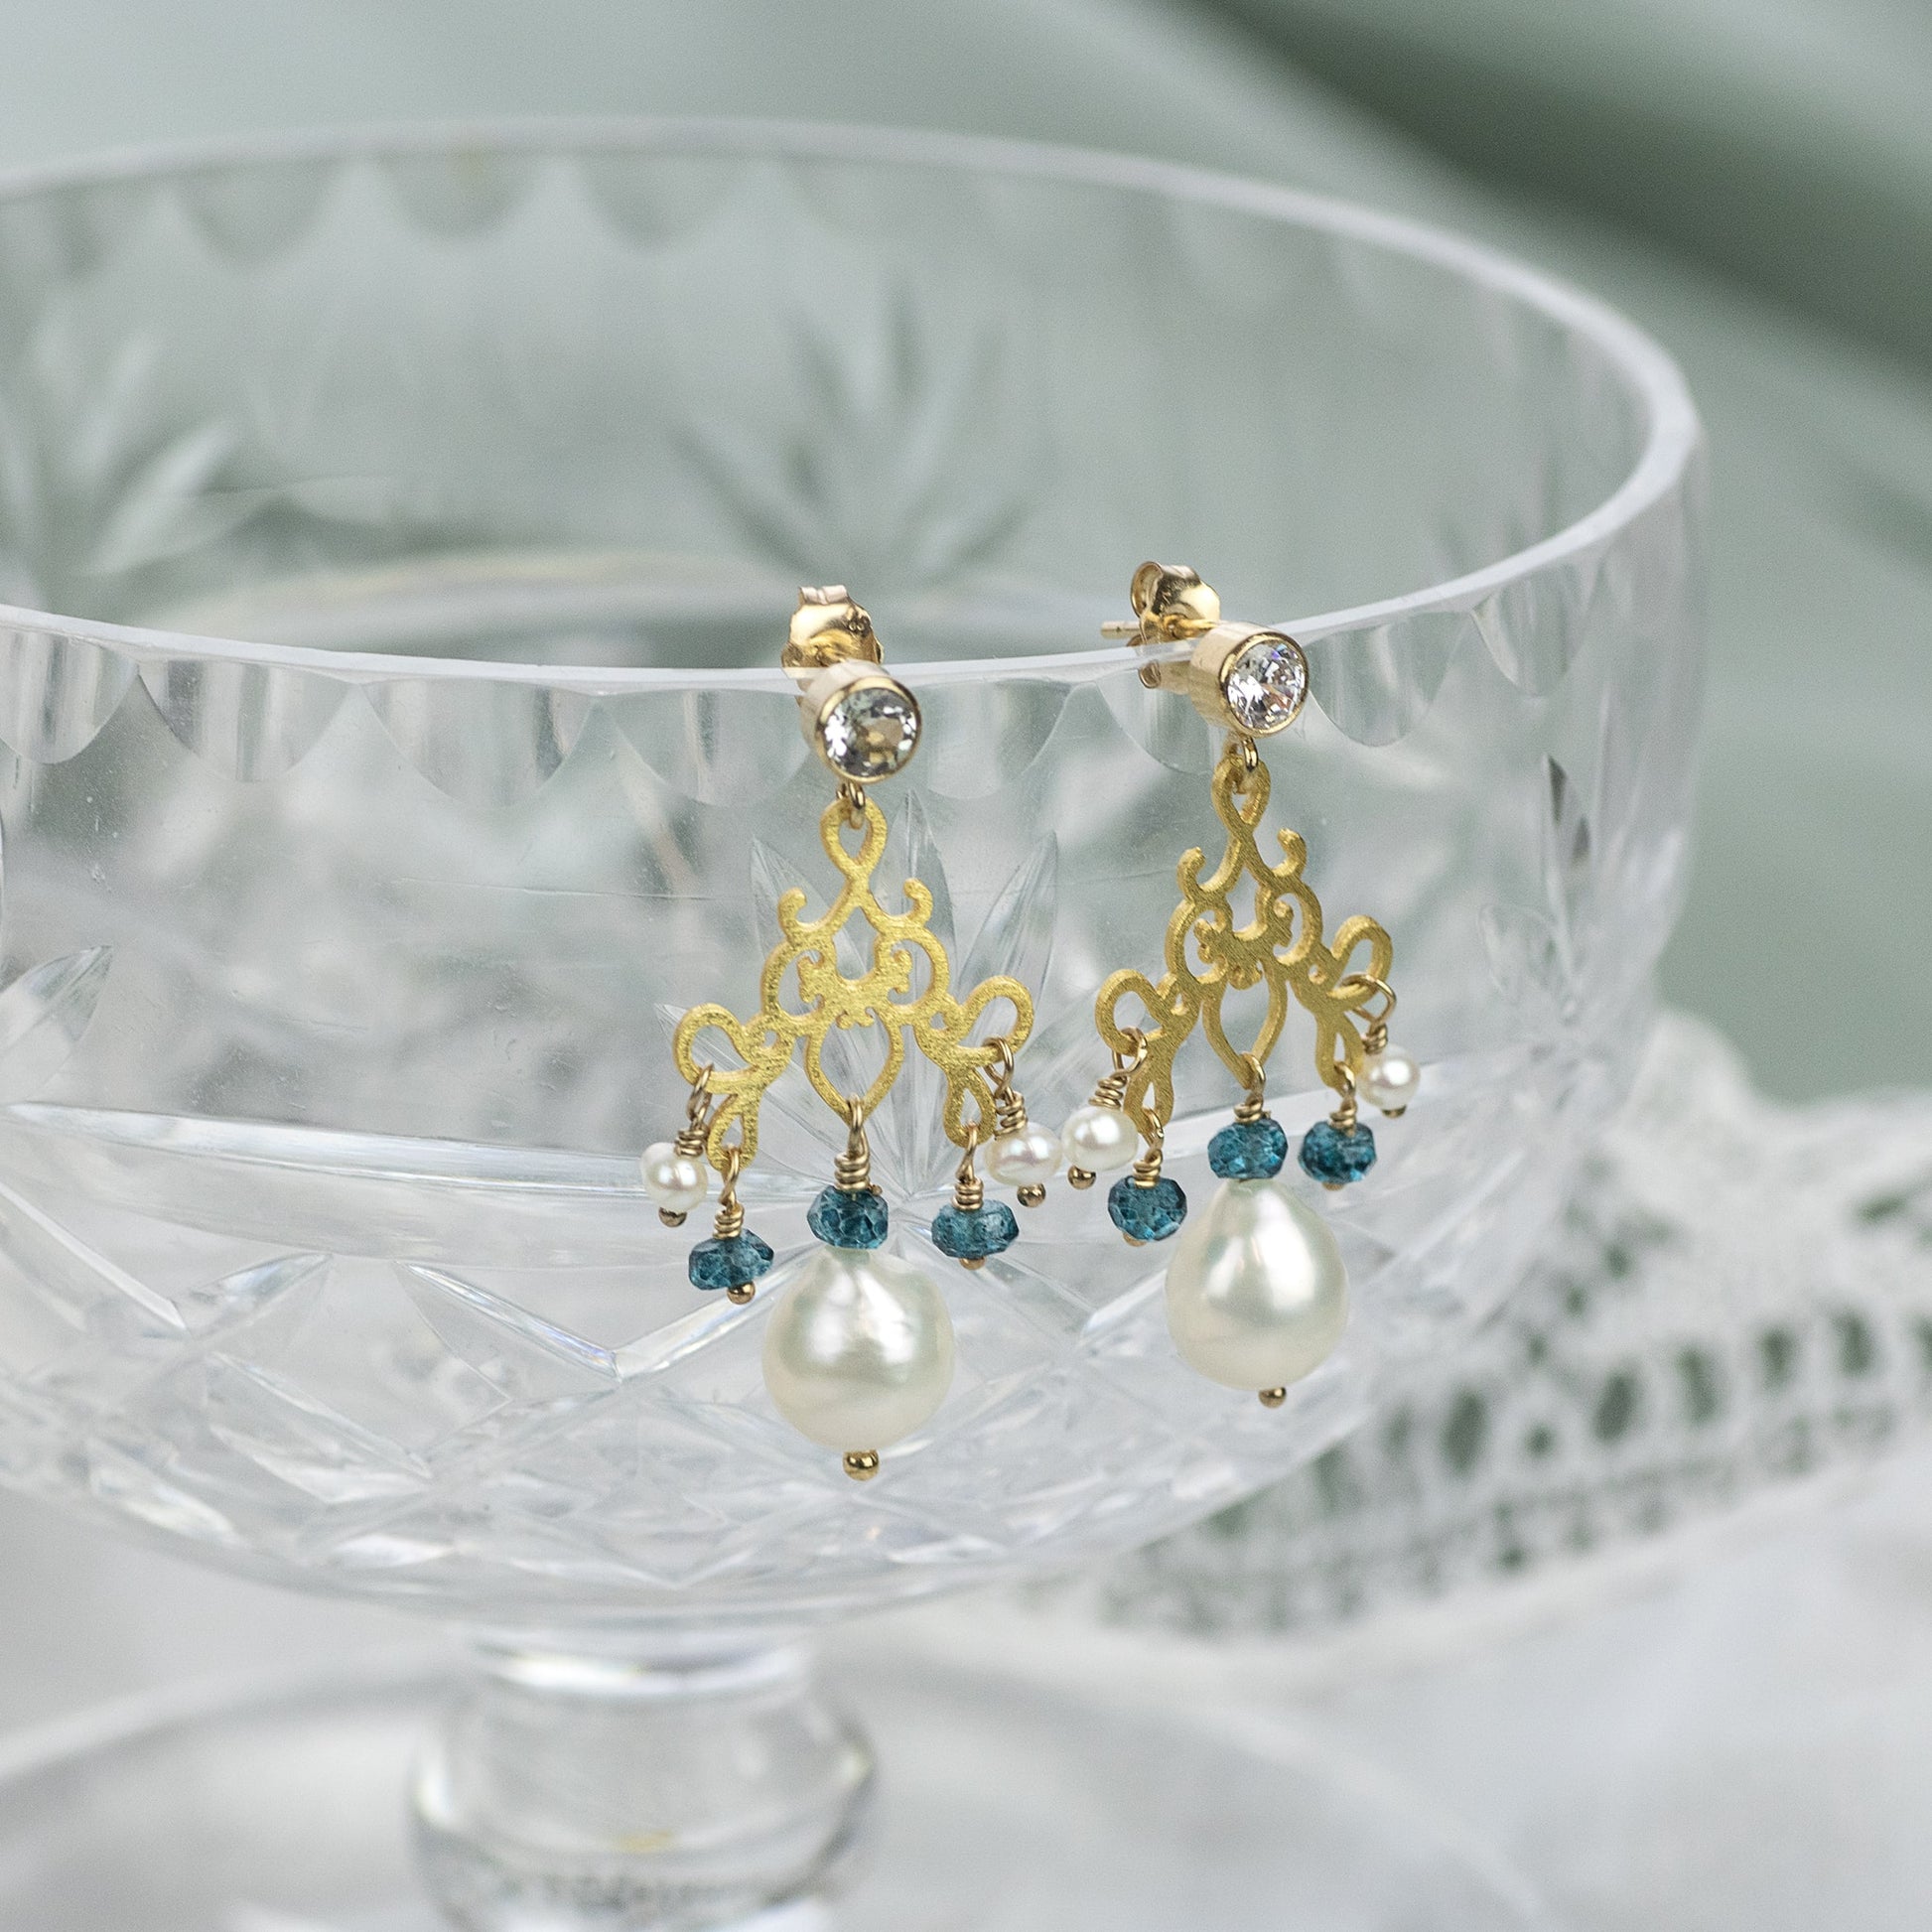 Gold Filigree, Blue Topaz & Pearl Earrings - Bridgerton Inspired - Charlotte